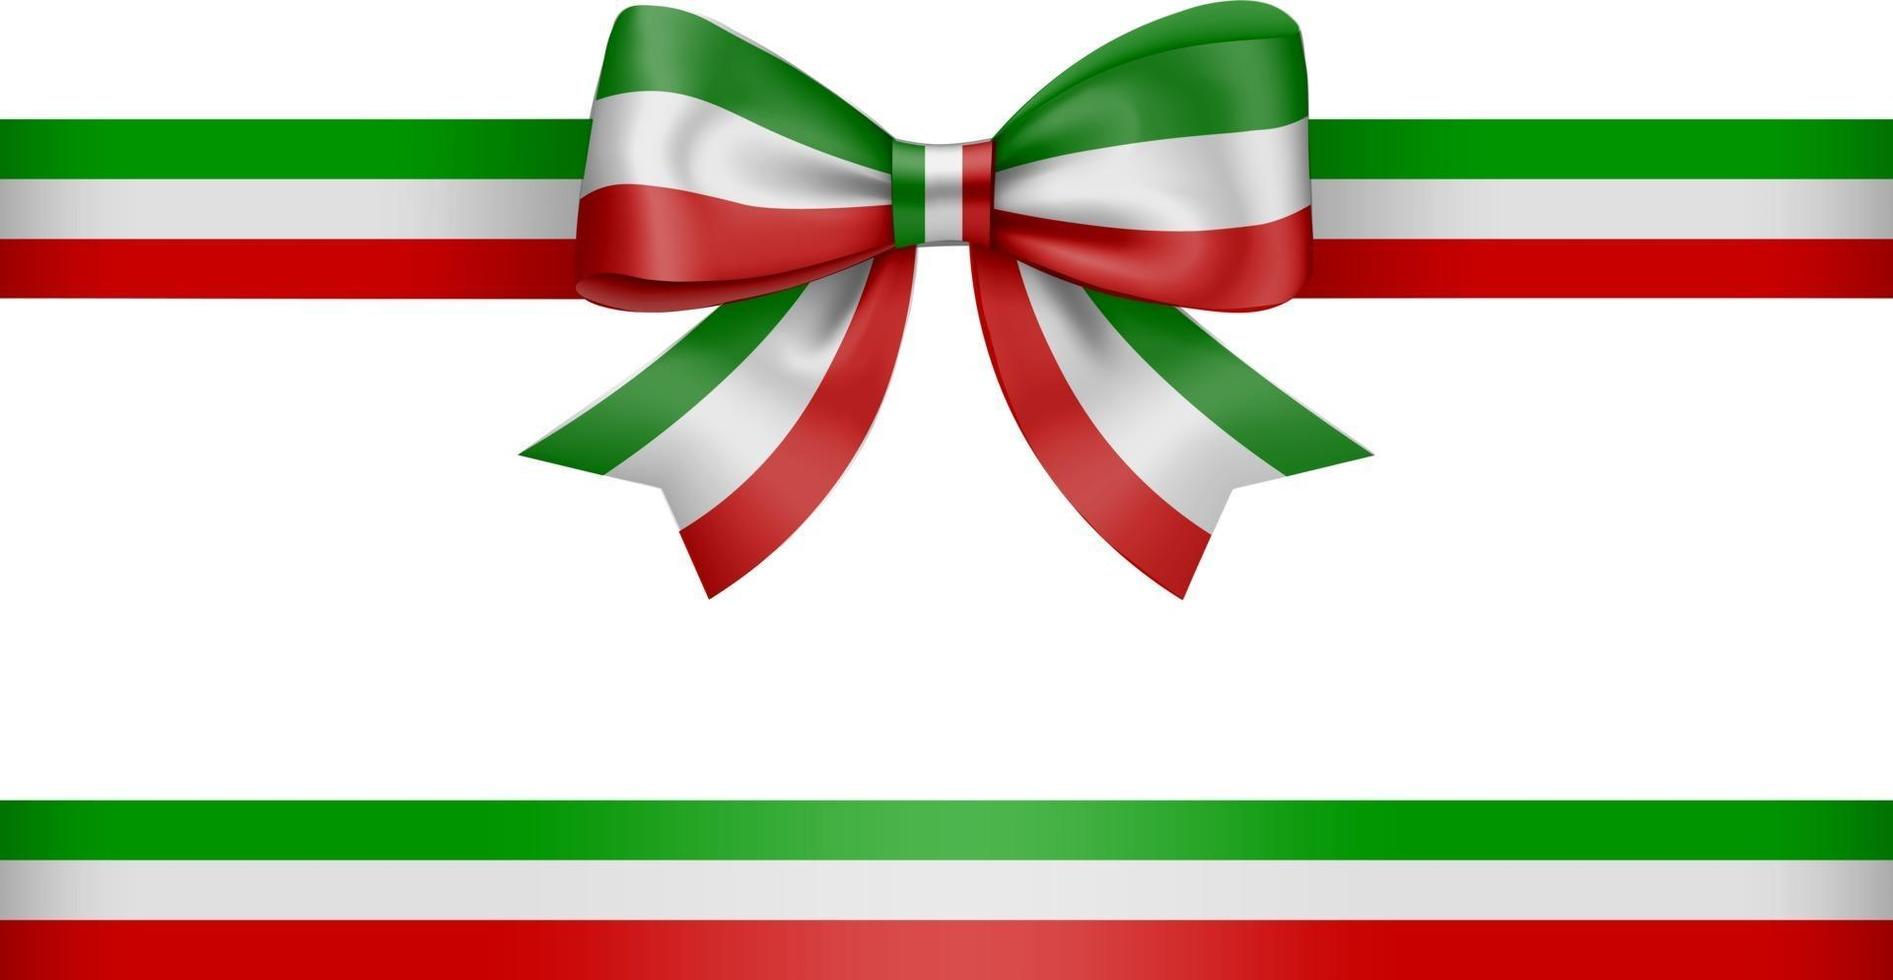 lazo y cinta con los colores de la bandera italiana o mexicana vector